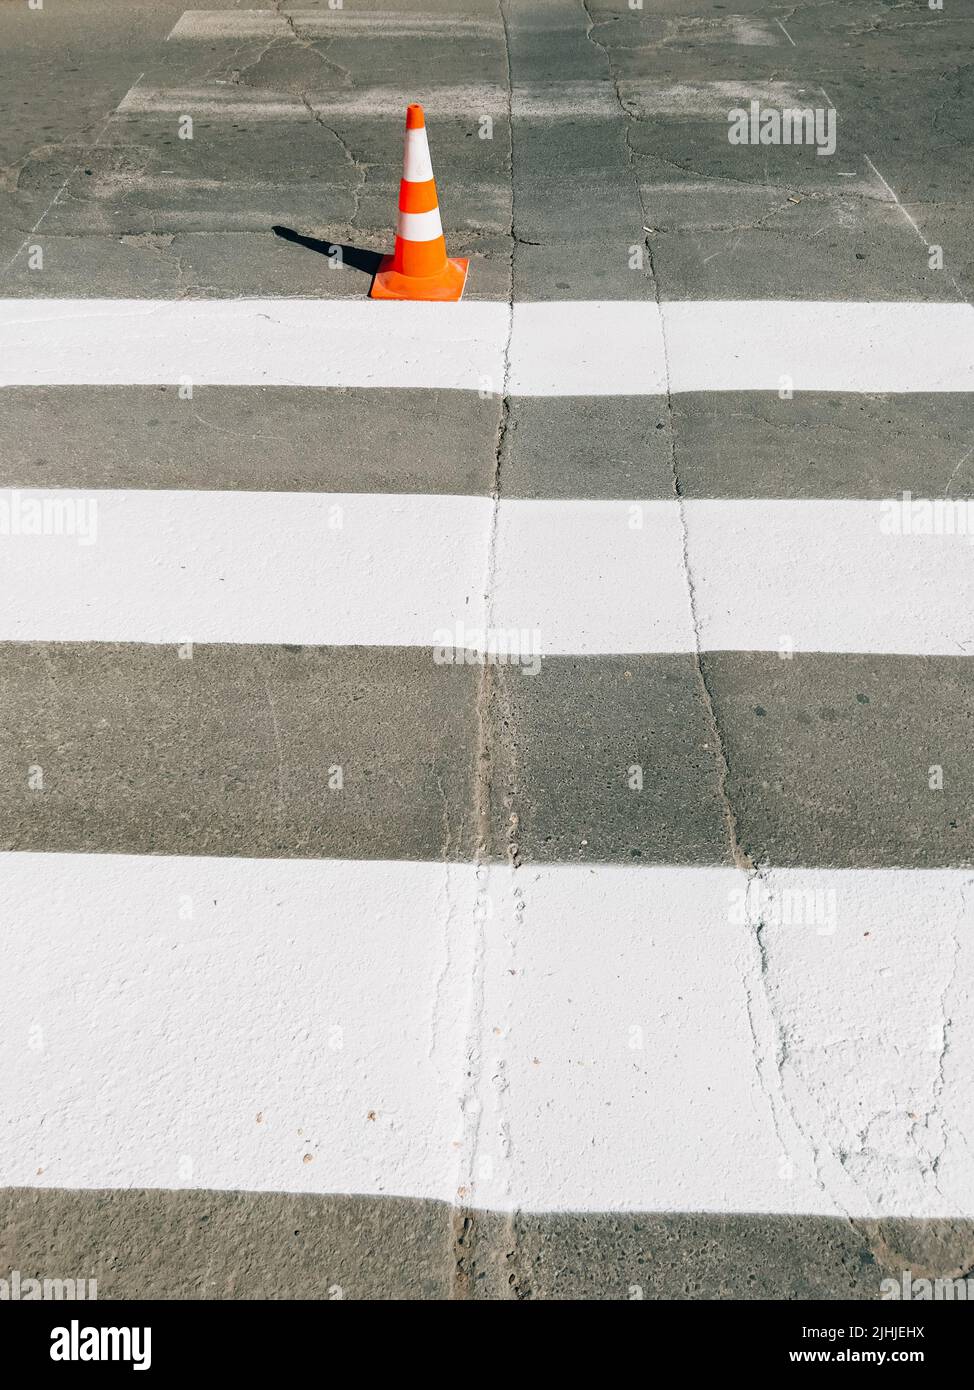 Peinture de marquage Zebra sur la route et cône de circulation orange sur la route Banque D'Images